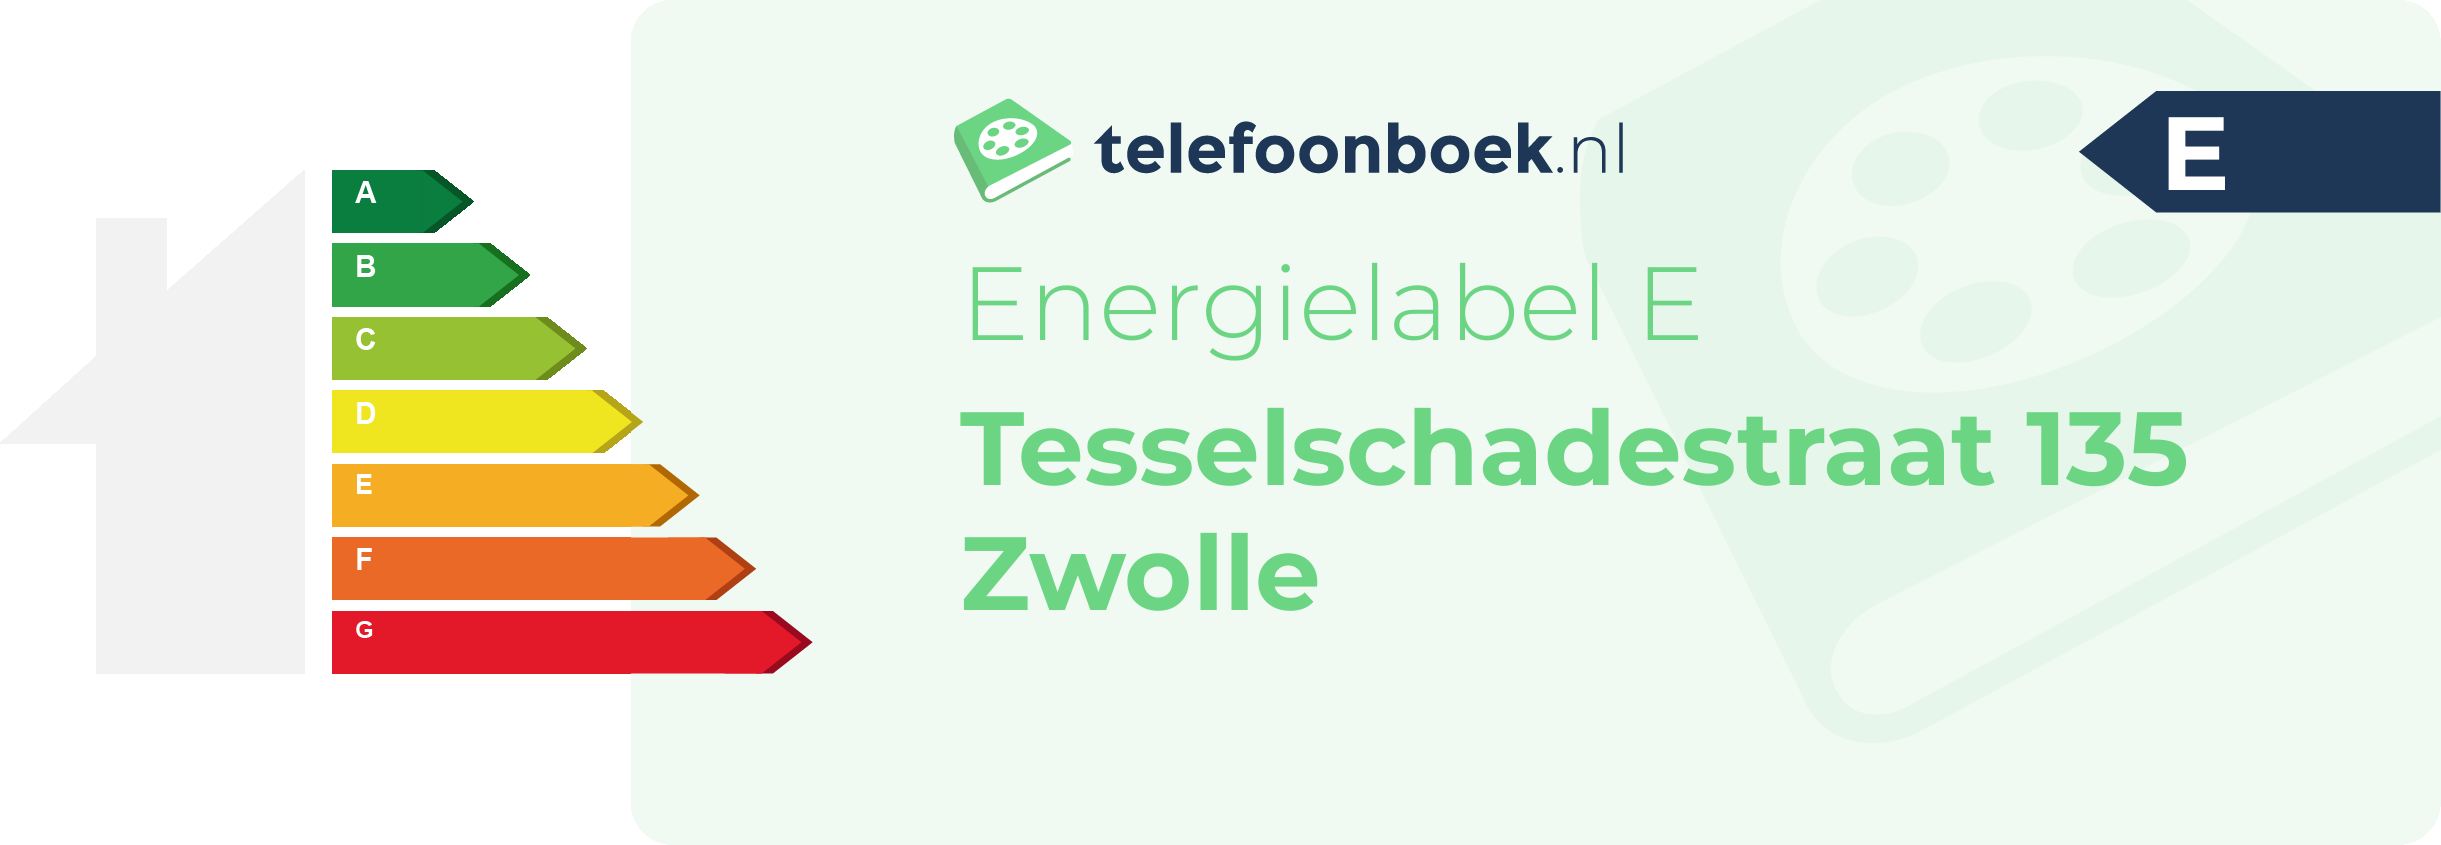 Energielabel Tesselschadestraat 135 Zwolle